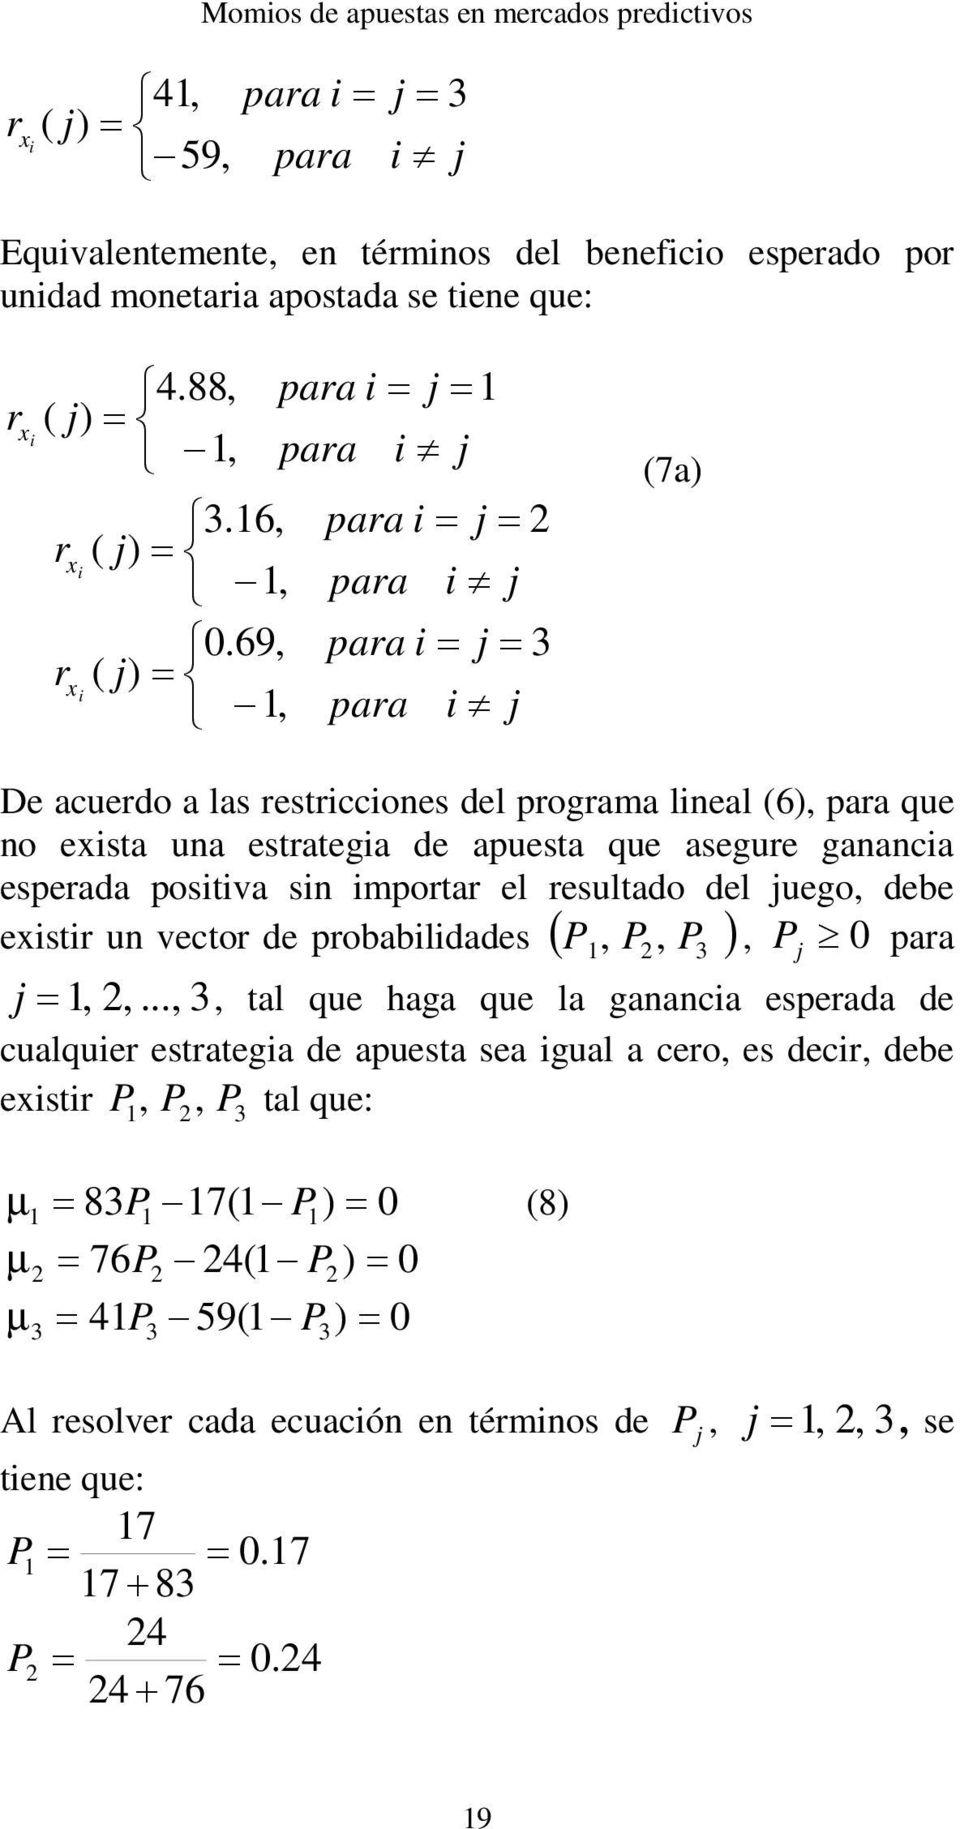 postva sn mportar el resultado del juego, debe exstr un vector de probabldades P, P, P3, Pj 0 para j,,.